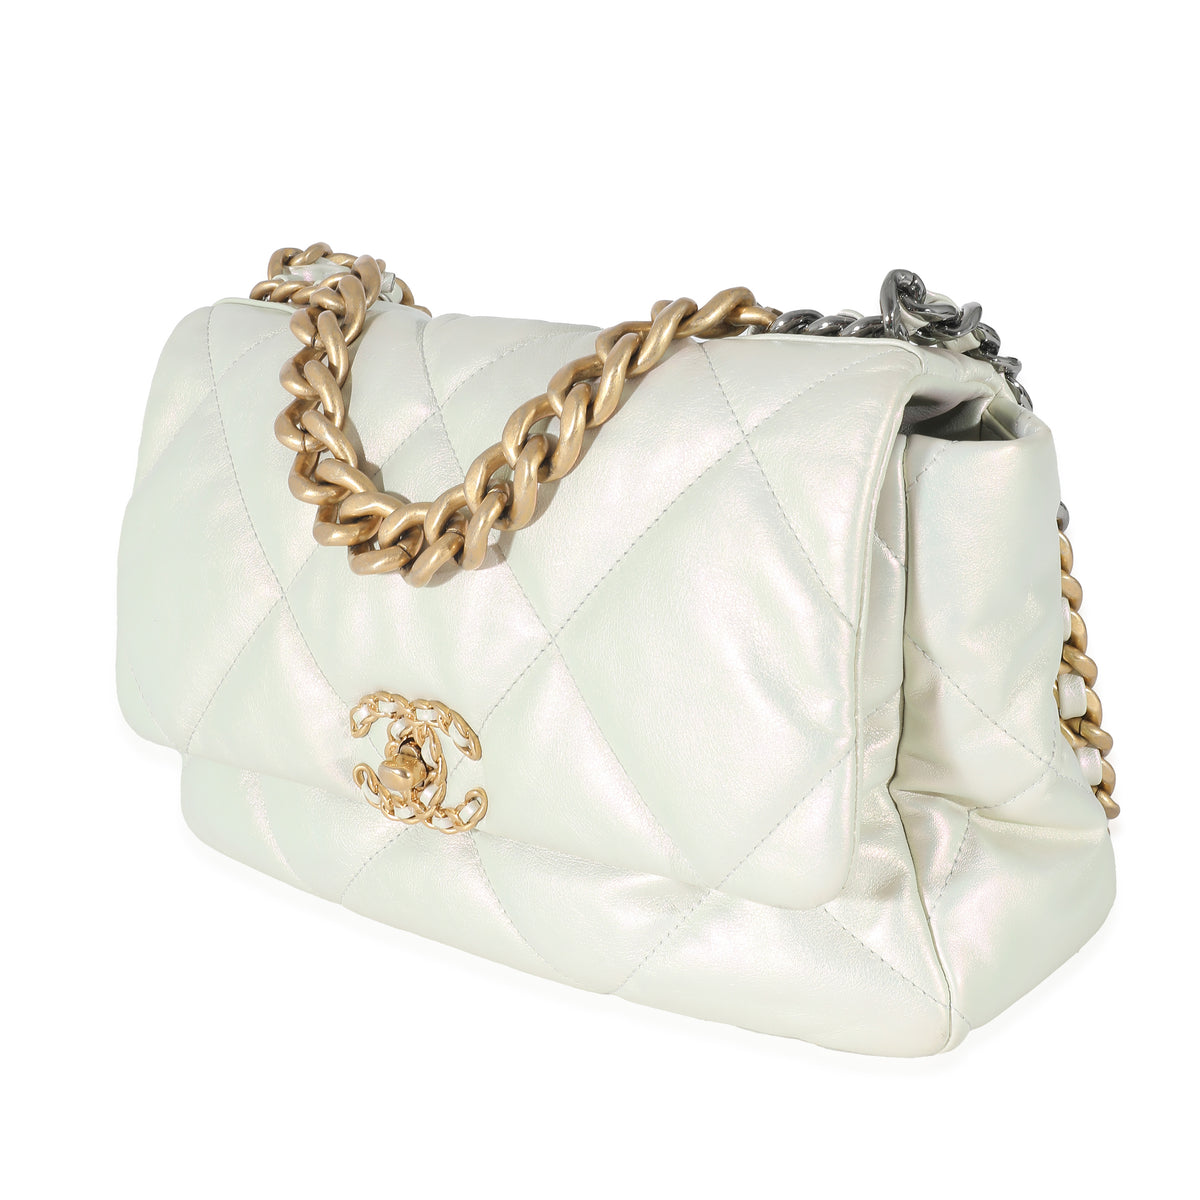 Chanel White Iridescent Calfskin Medium Chanel 19 Flap Bag, myGemma, DE